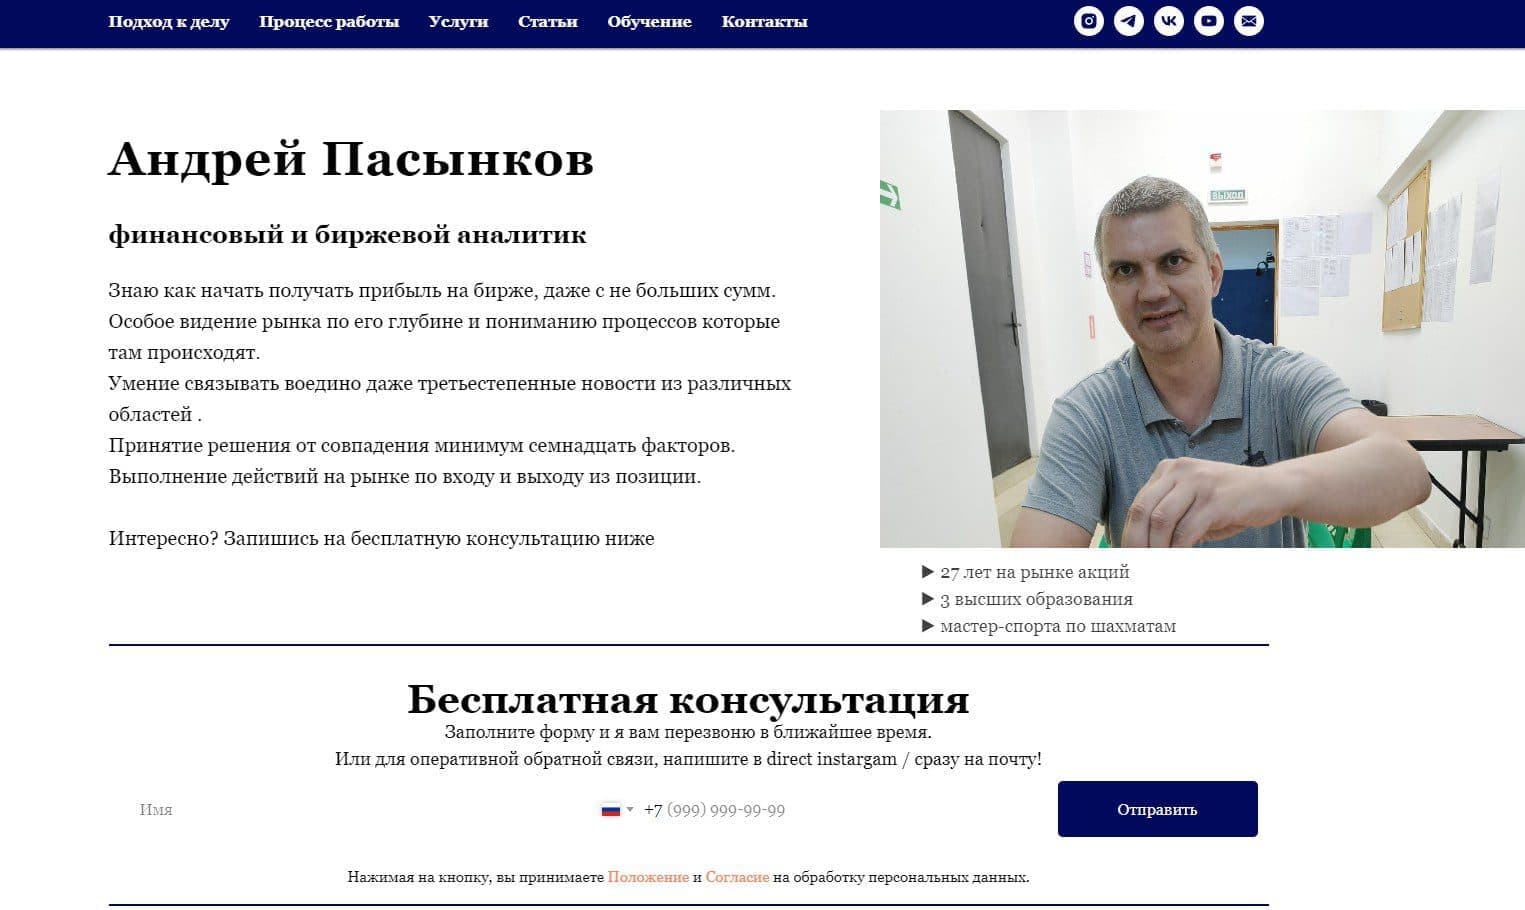 Сайт Андрей Пасынков описание деятельности